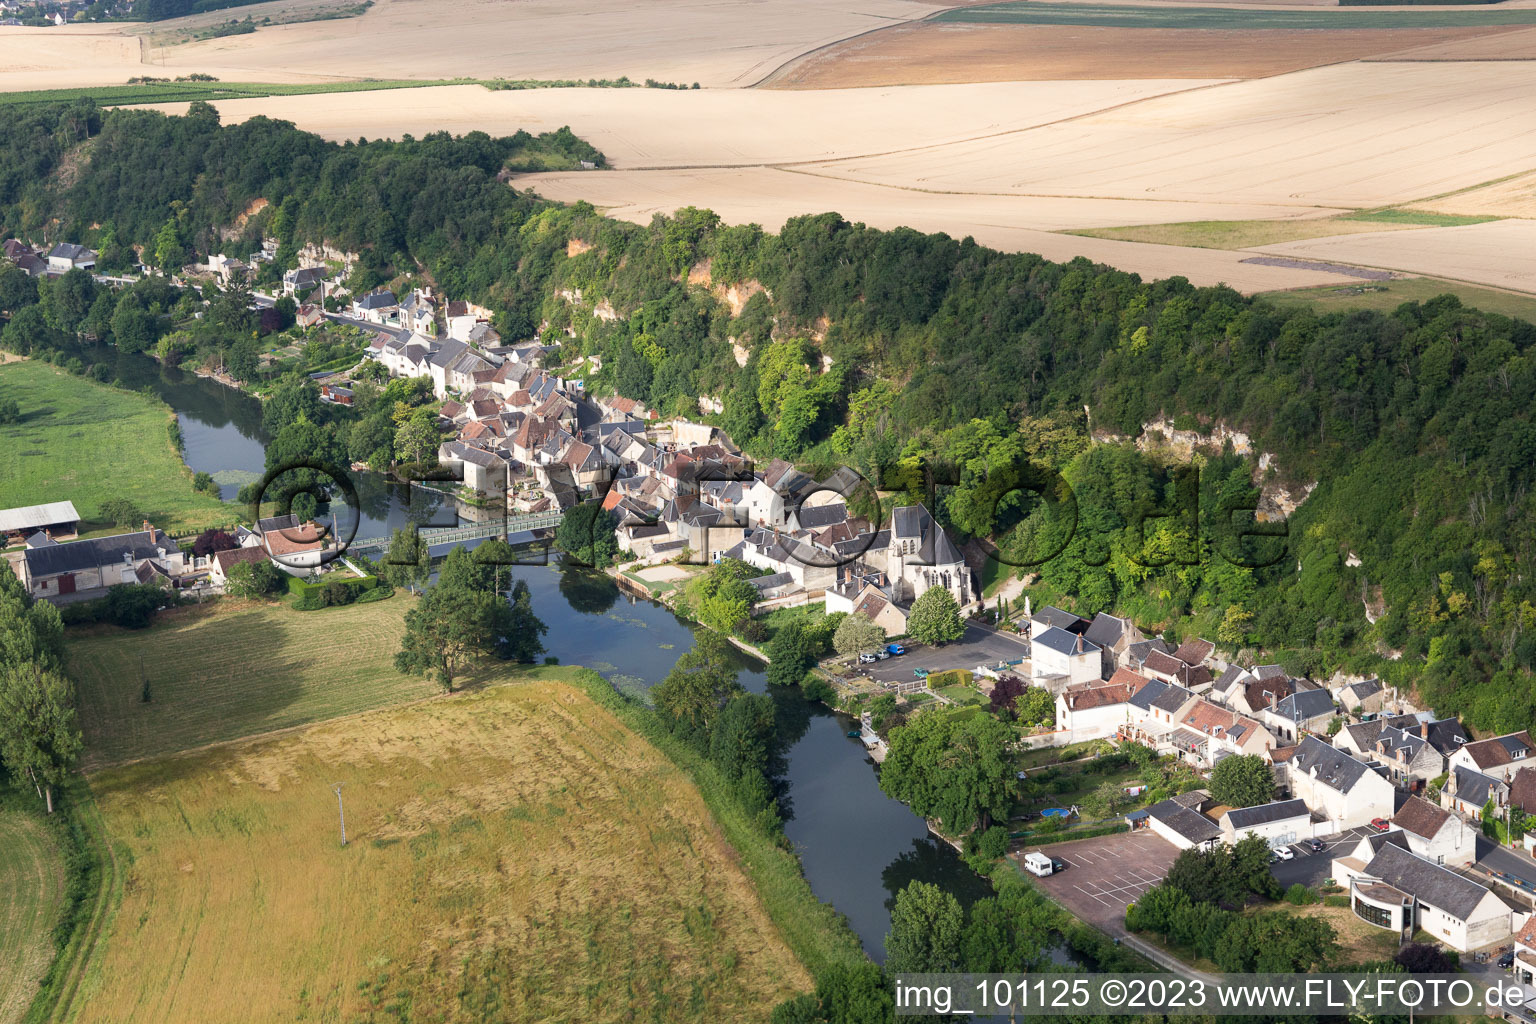 Saint-Rimay im Bundesland Loir-et-Cher, Frankreich aus der Luft betrachtet